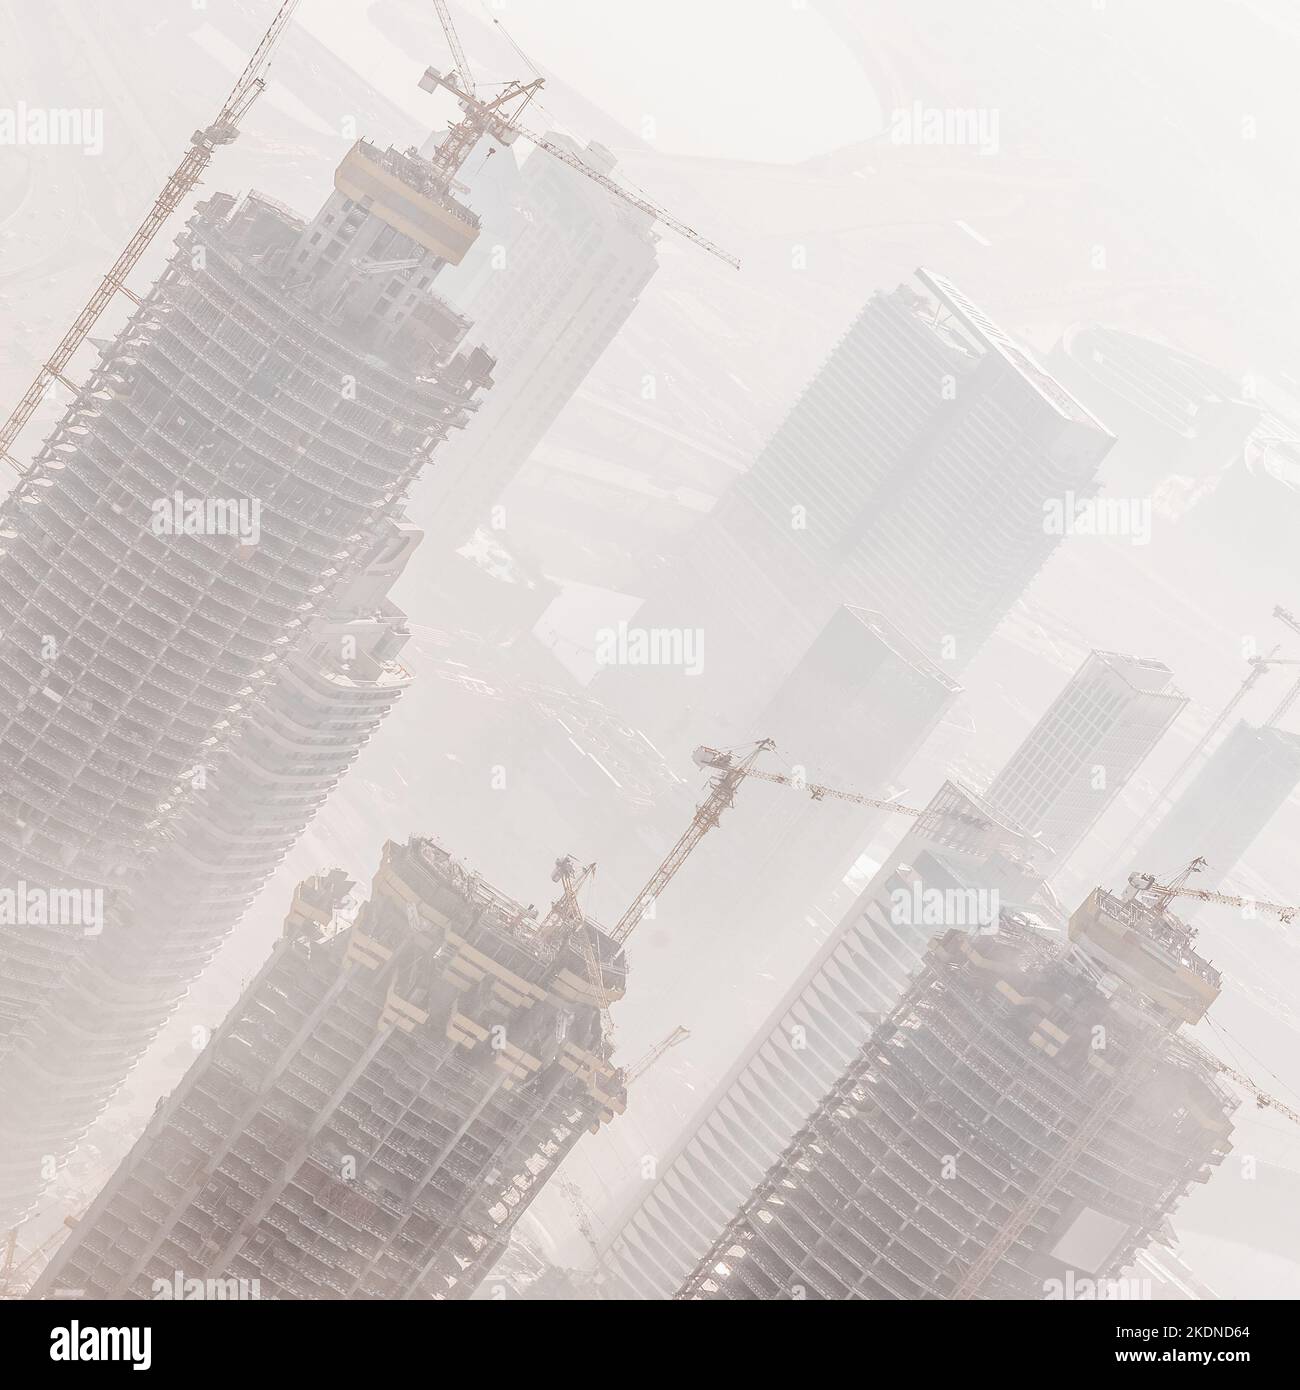 Enorme skyscrappers sito in costruzione di gru sulla sommità di edifici. Rapid urban e di costruzione per lo sviluppo del settore o l'inflazione immobiliare bolla. Foto Stock